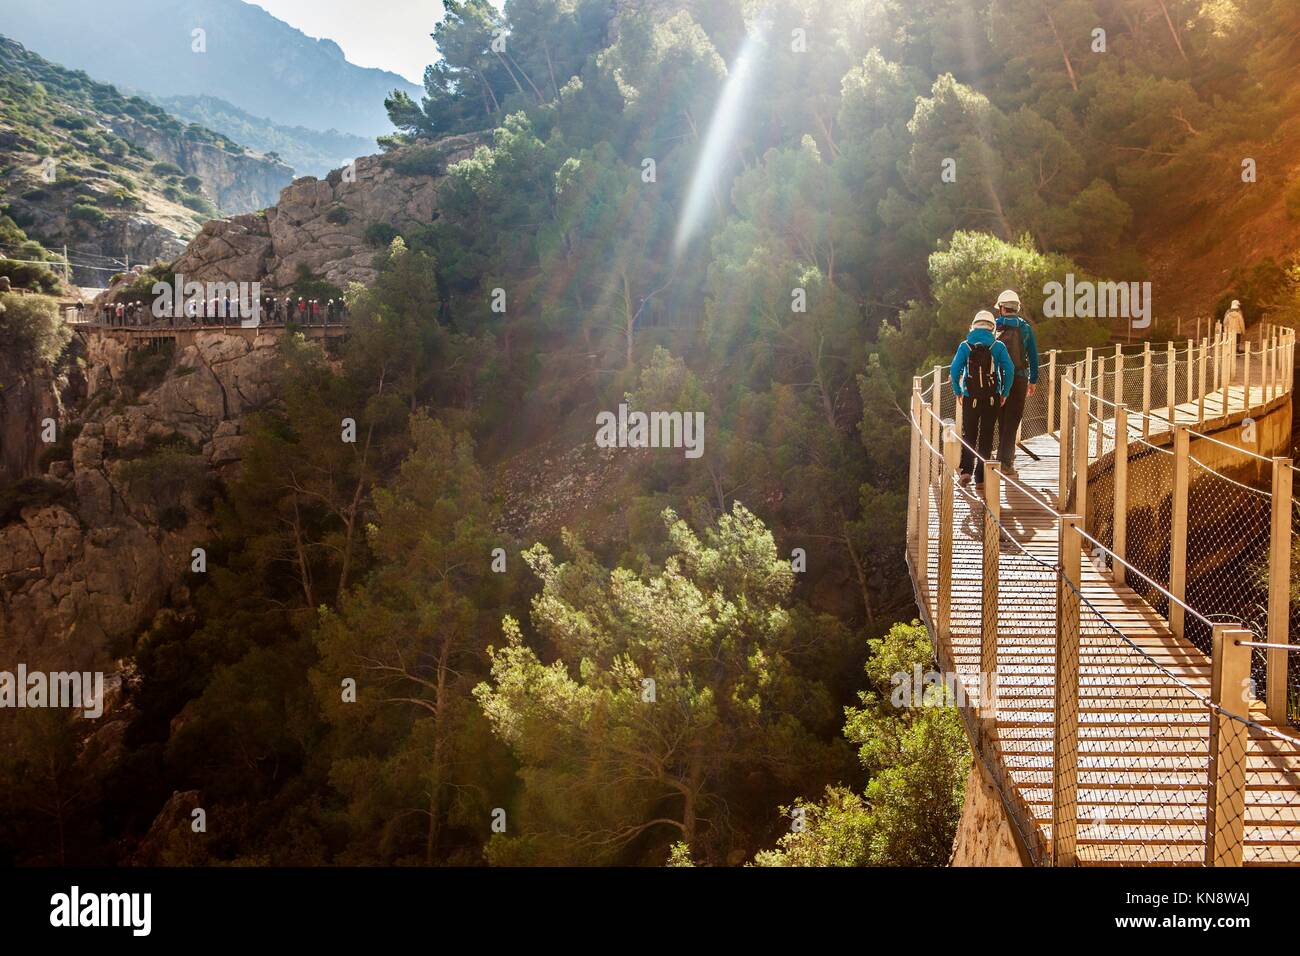 Los visitantes caminar a lo largo de la pasarela de la ruta Caminito del Rey, Málaga, España. Foto de stock